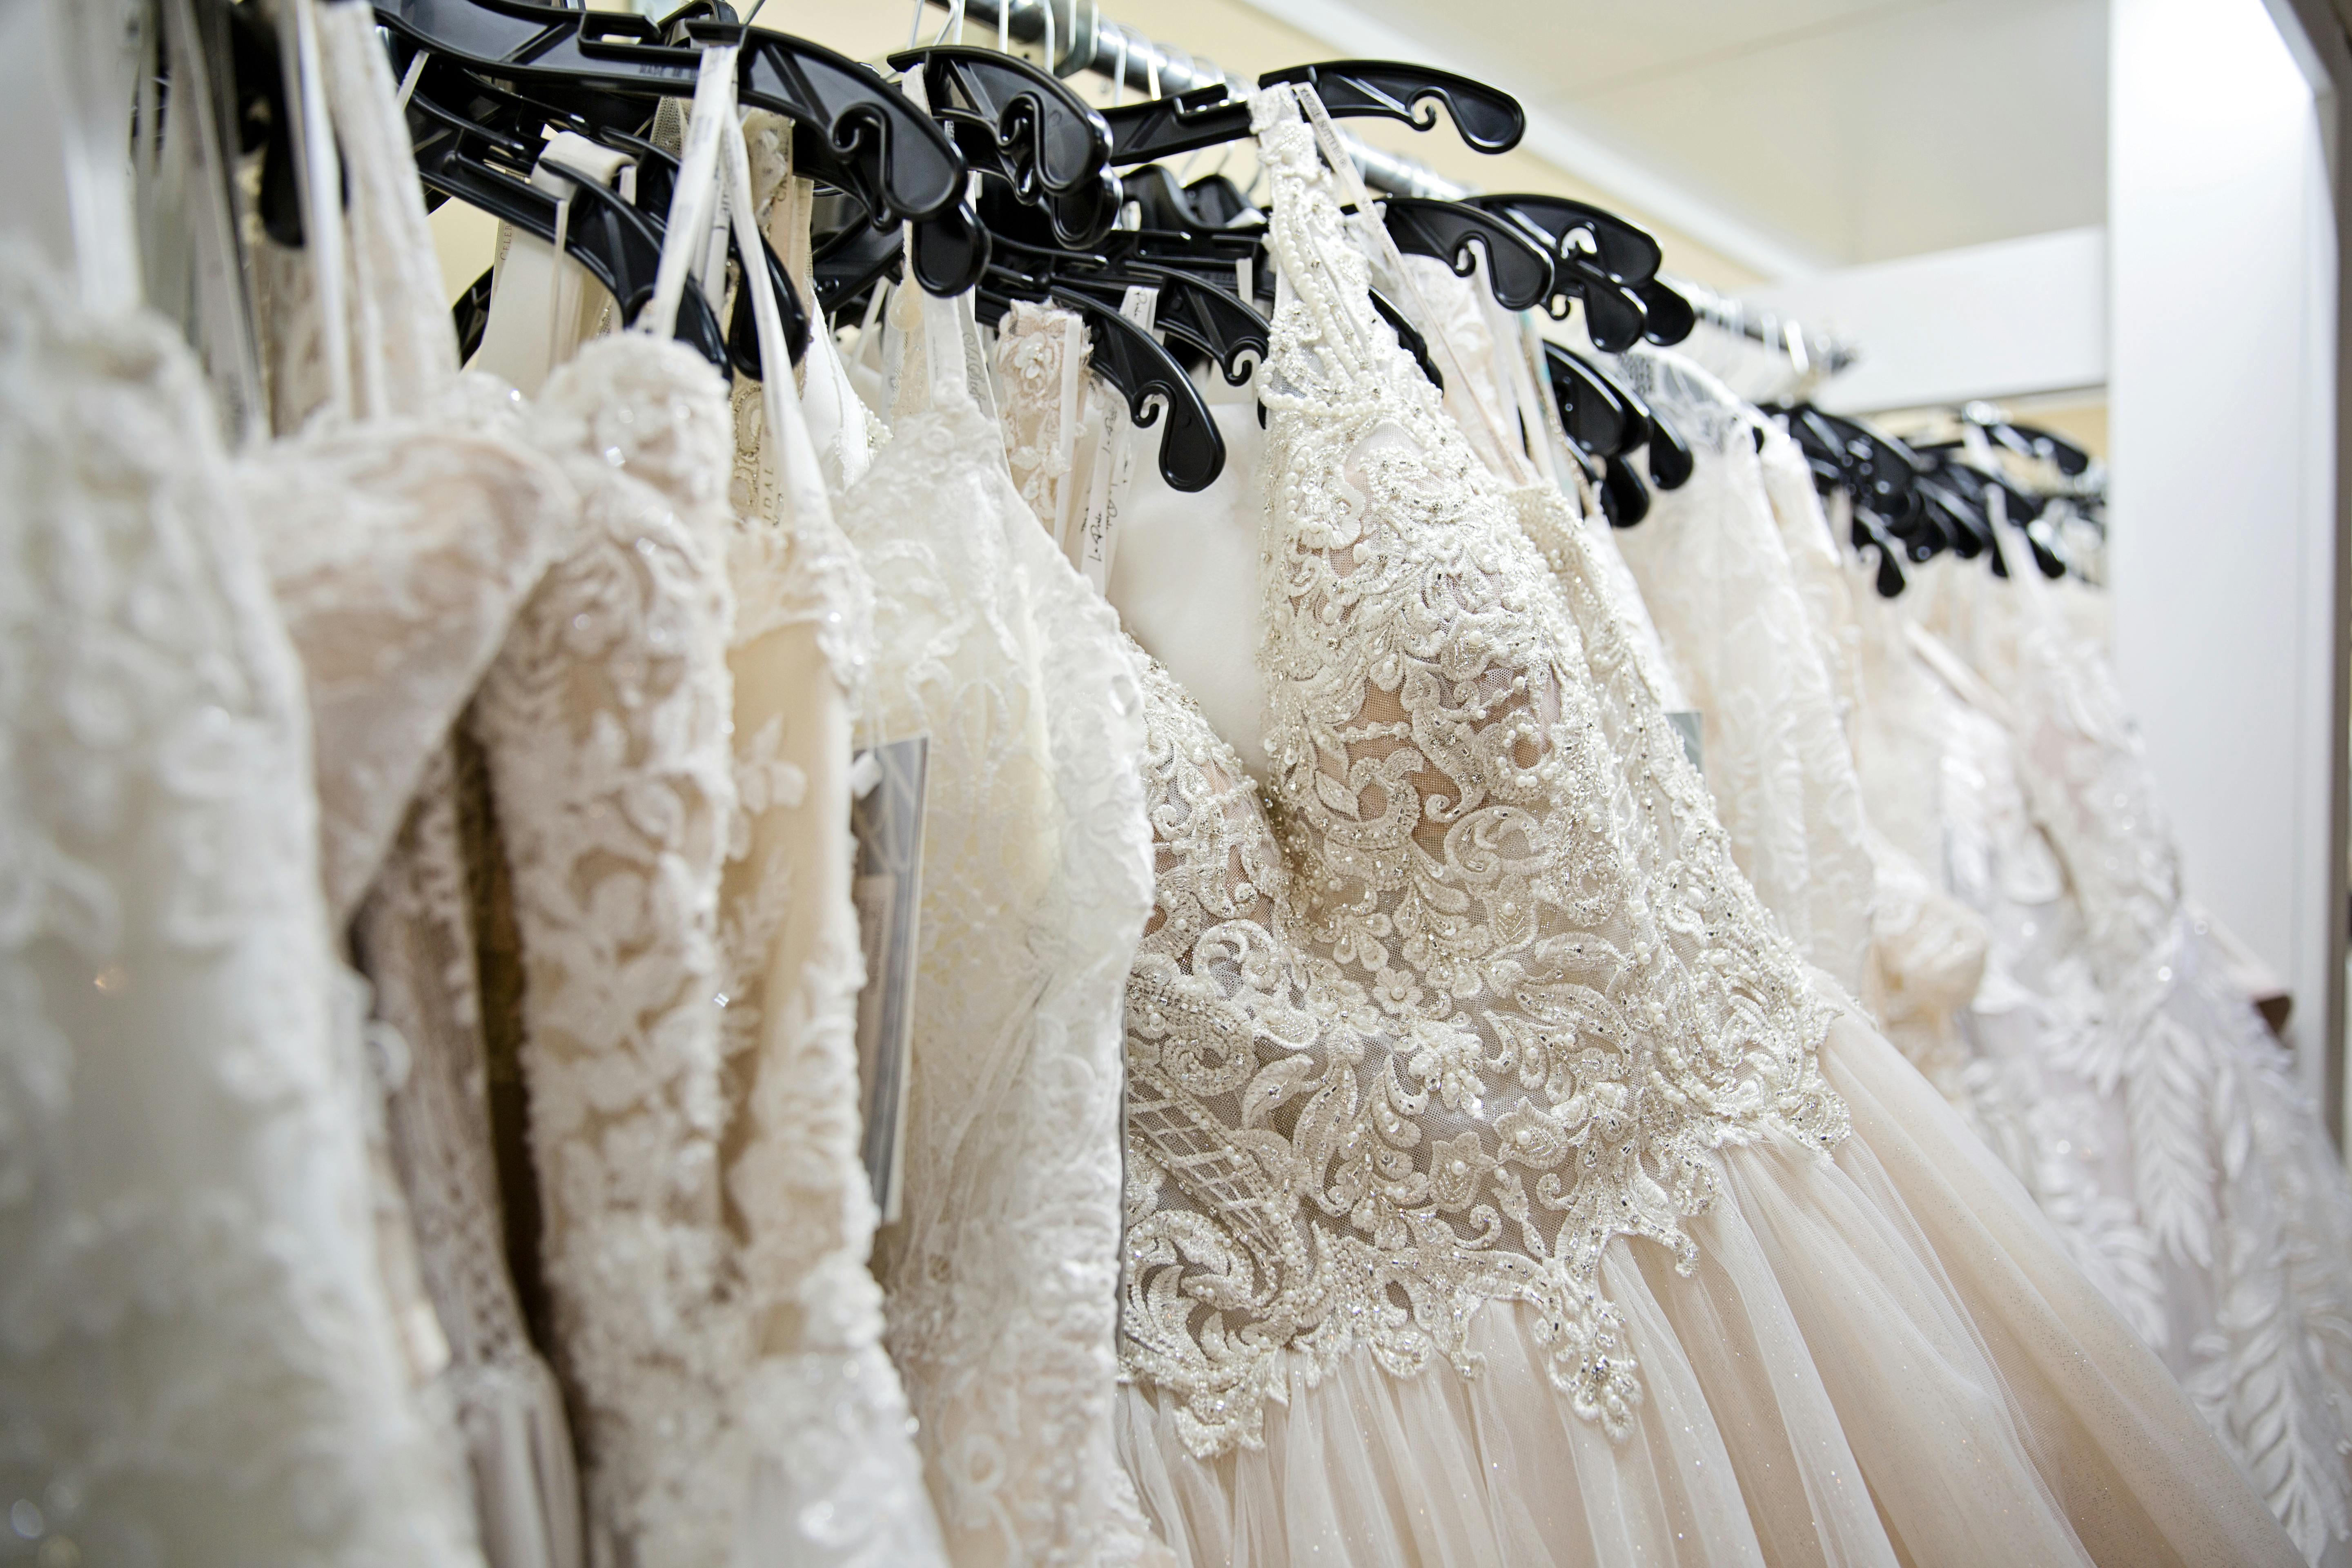 Une étagère contenant des robes de mariée | Source : Pexels